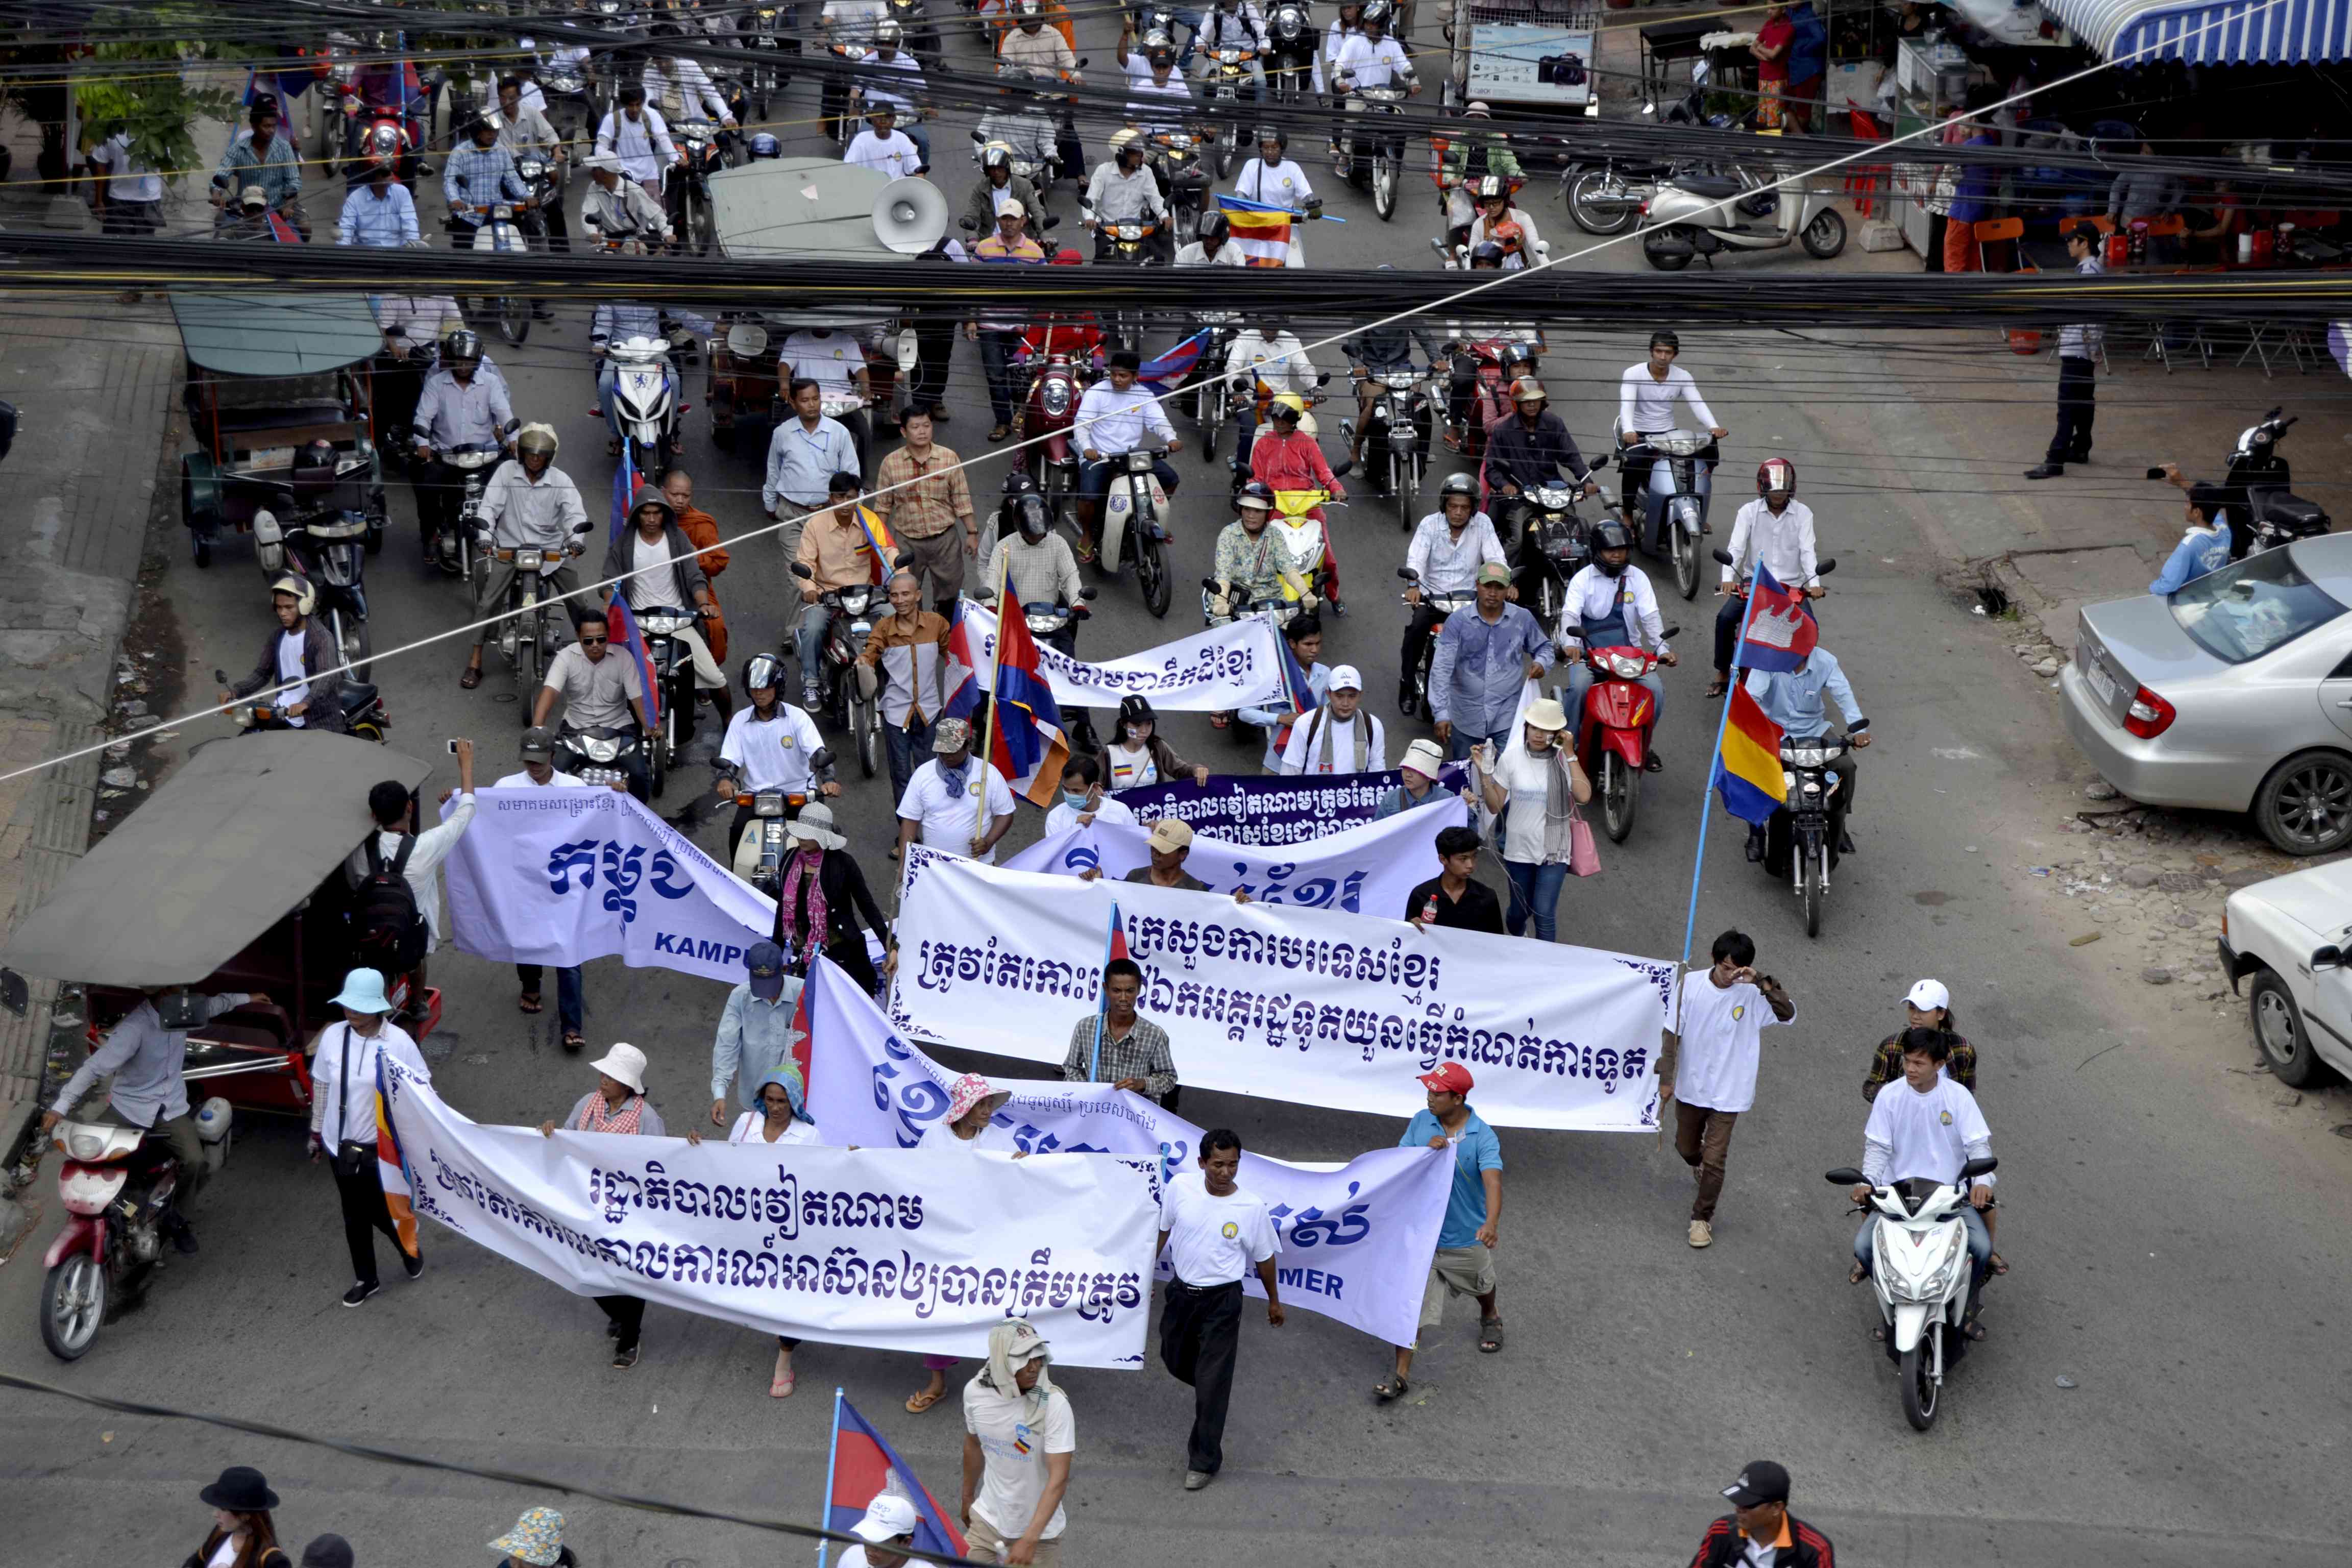 Các nhà sư và người biểu tình Khmer Krom trong một cuộc biểu tình tại một con phố tại Phnom Penh, Campuchia, 8/10/2014. Với mục đích yêu cầu chính quyền Hà Nội phải xin lỗi về một lời phát biểu của một quan chức đại sứ quán. Ảnh: Son Cheng Chon